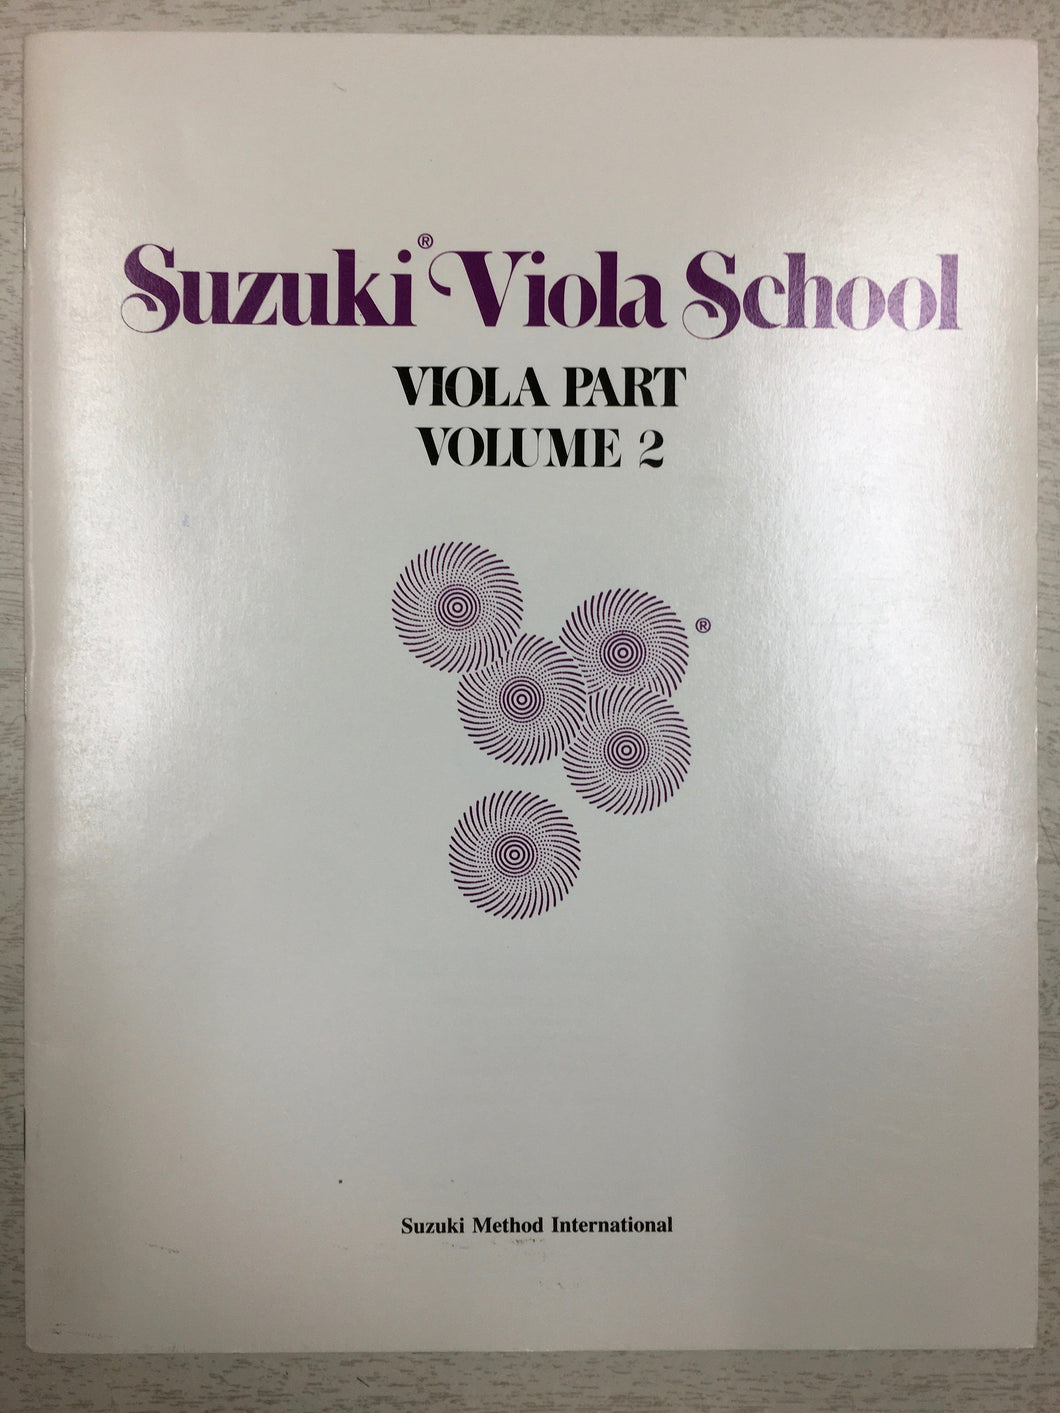 Suzuki Viola School - Volume 2: Viola Part